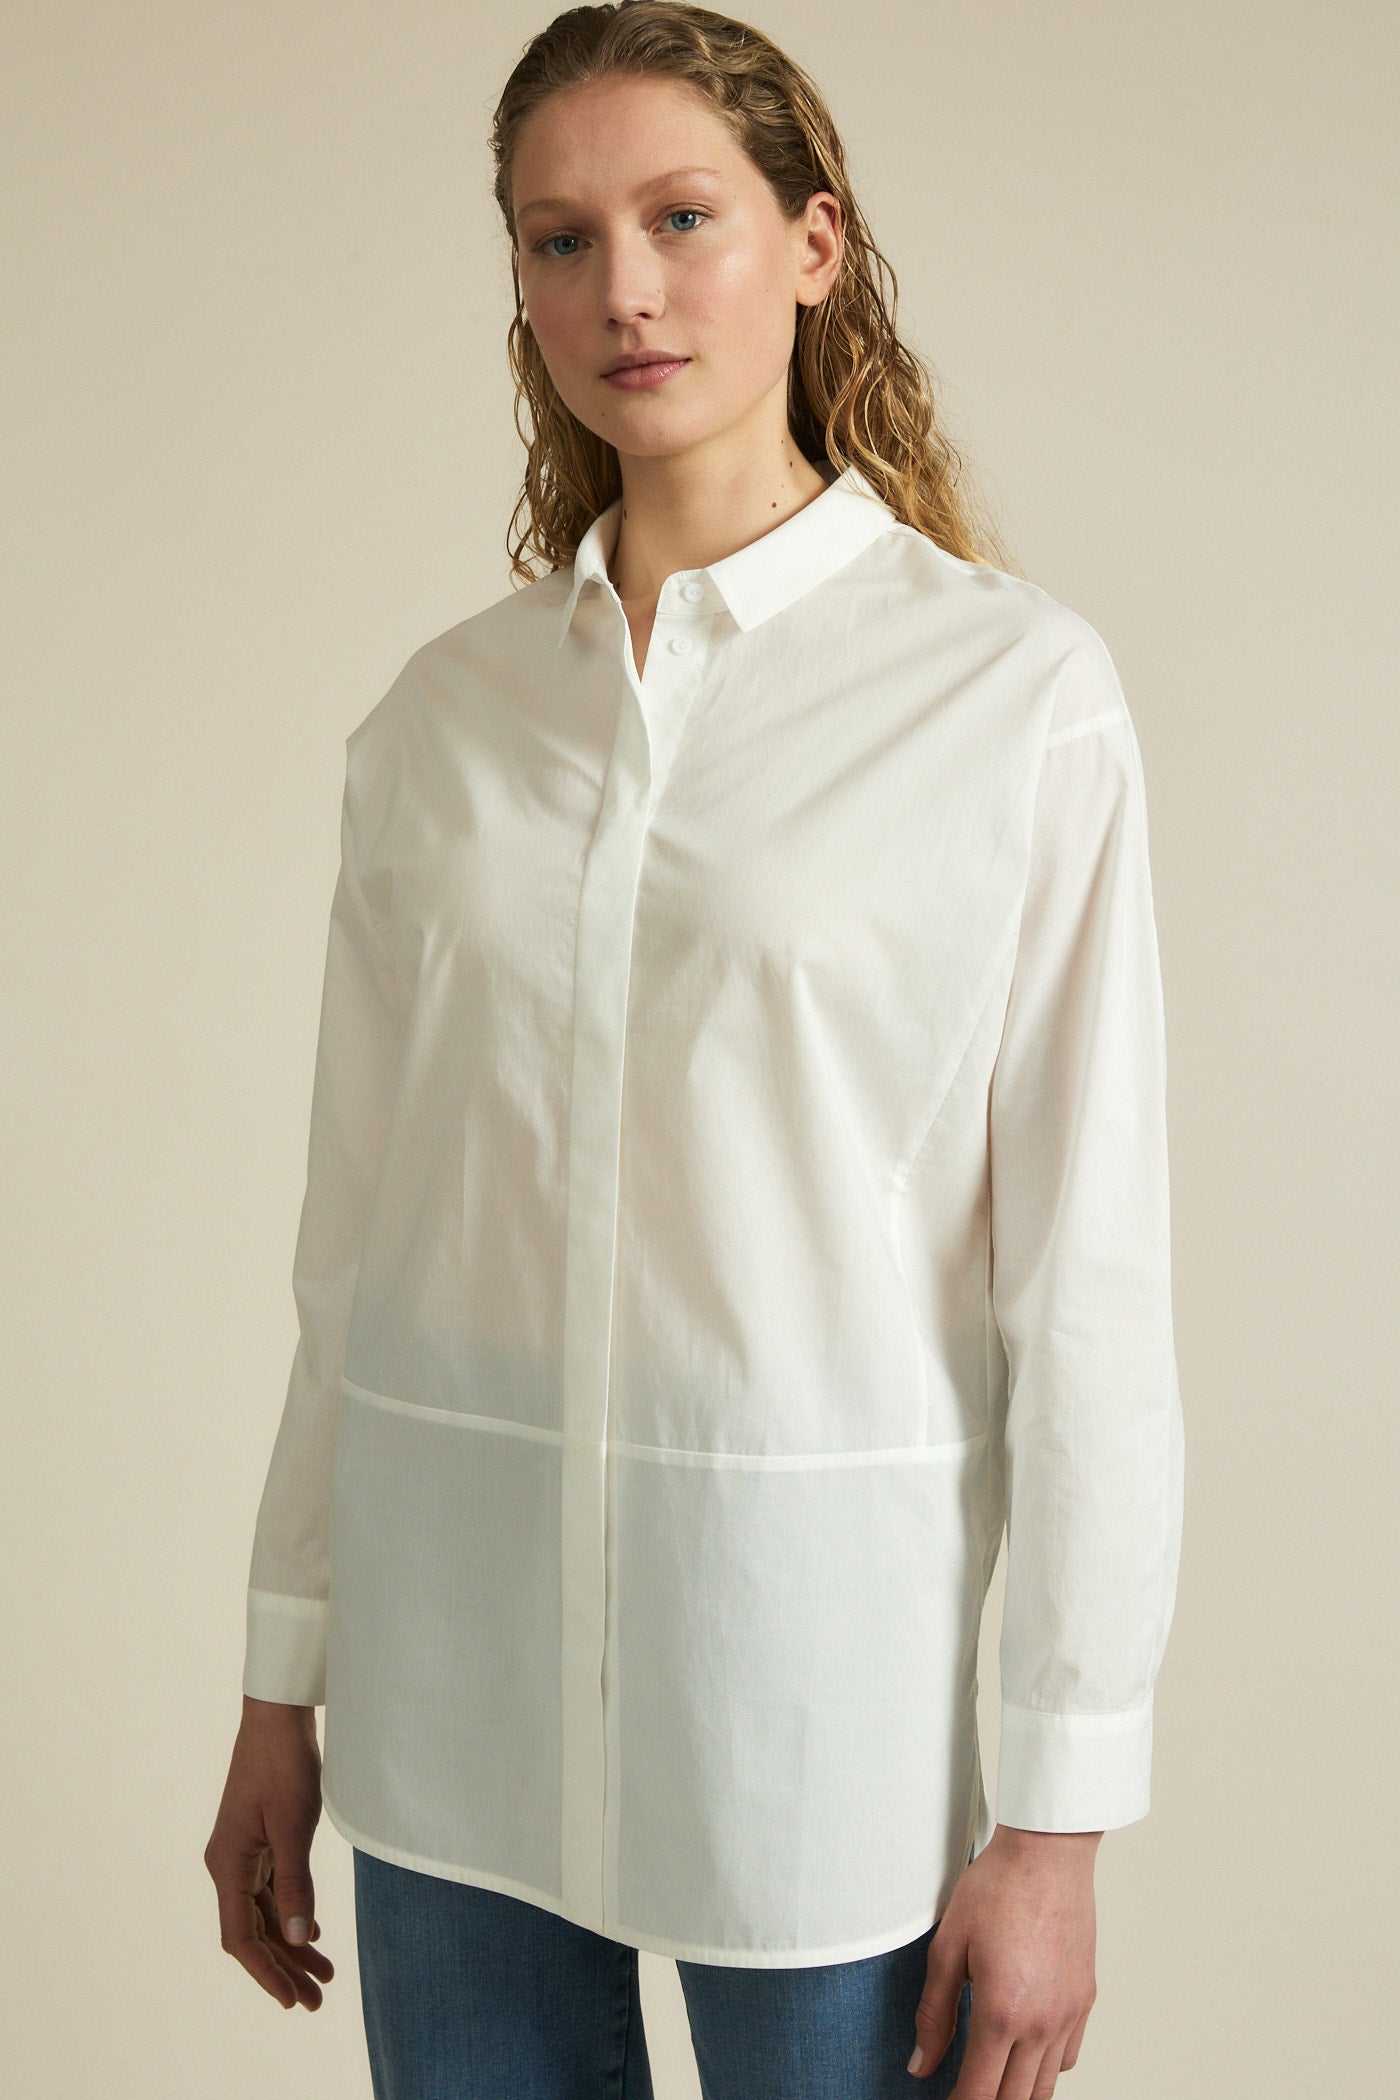 Averie Short-Sleeve Shirt & Shorts Satin Pajama Set